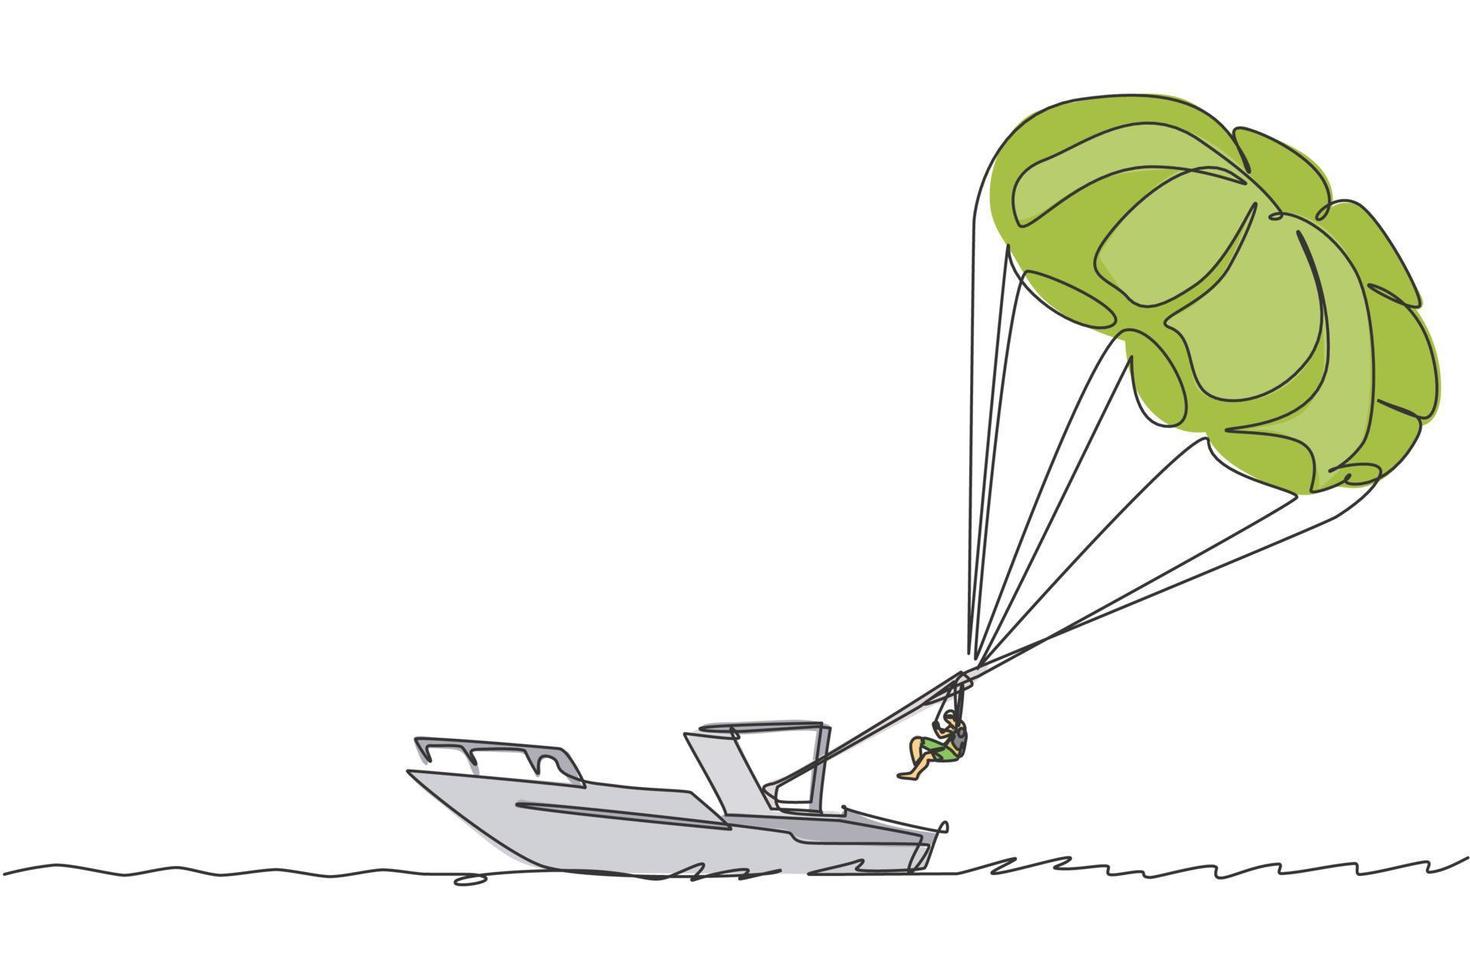 dibujo de una sola línea continua joven turista volando con paracaídas de parasailing en el cielo tirado por un barco. concepto de deporte de vacaciones de vacaciones extremas. ilustración gráfica de vector de diseño de dibujo de una línea